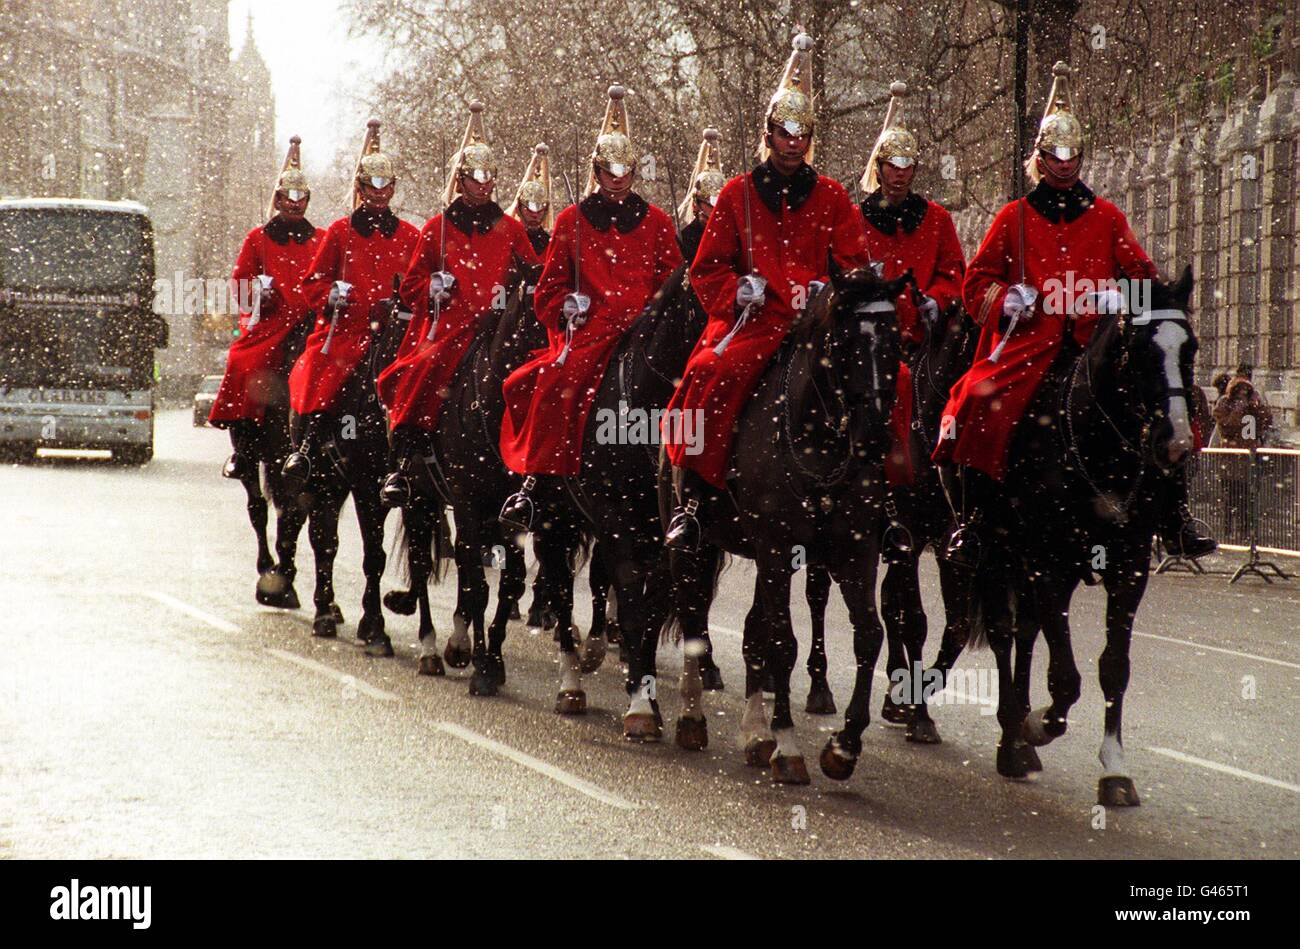 Eine Truppe der Life Guards - Höhlenmenschen - reiten ihre Pferde durch einen Schneeschauer am Mittwochmorgen in Londons Whitehall auf dem Weg zur täglichen Wache bei Horse Guards. In anderen Teilen Großbritanniens sind mehrere Zentimeter Schnee gefallen, sodass Autofahrer gestrandet sind, während Actic-Winde aus Europa hereingeblasen haben. PA FOTO von Tony Harris. Stockfoto